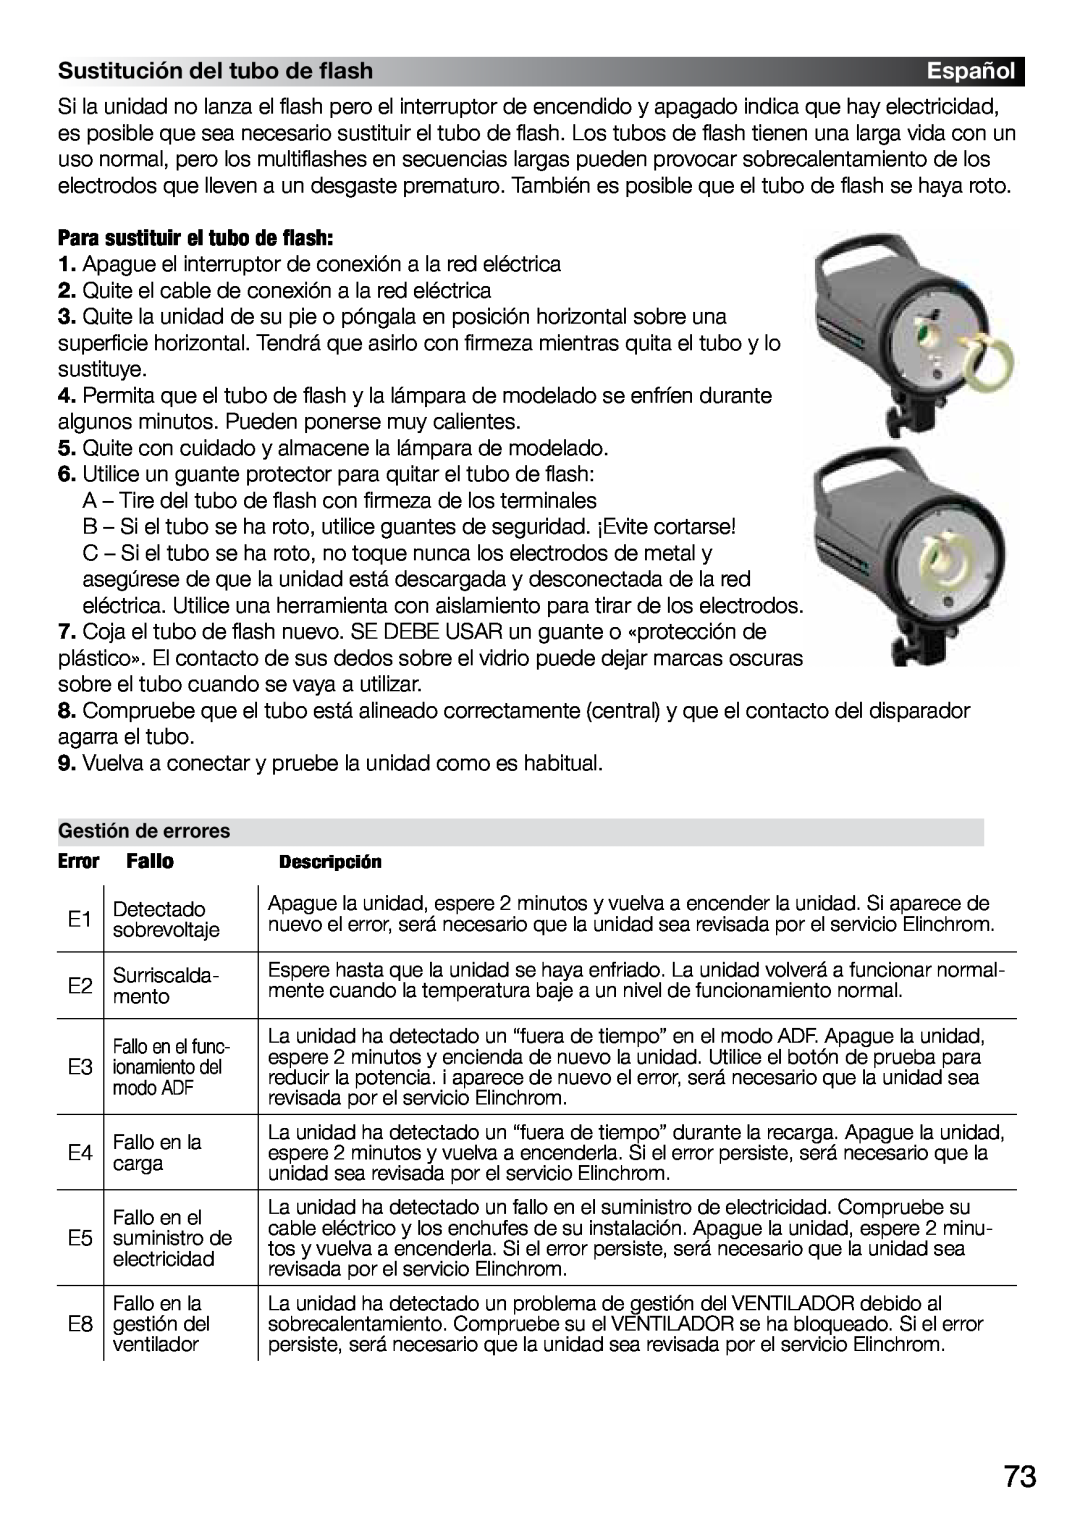 Elinchrom 2 IT, 4 IT operation manual Sustitución del tubo de flash, Español, Gestión de errores 